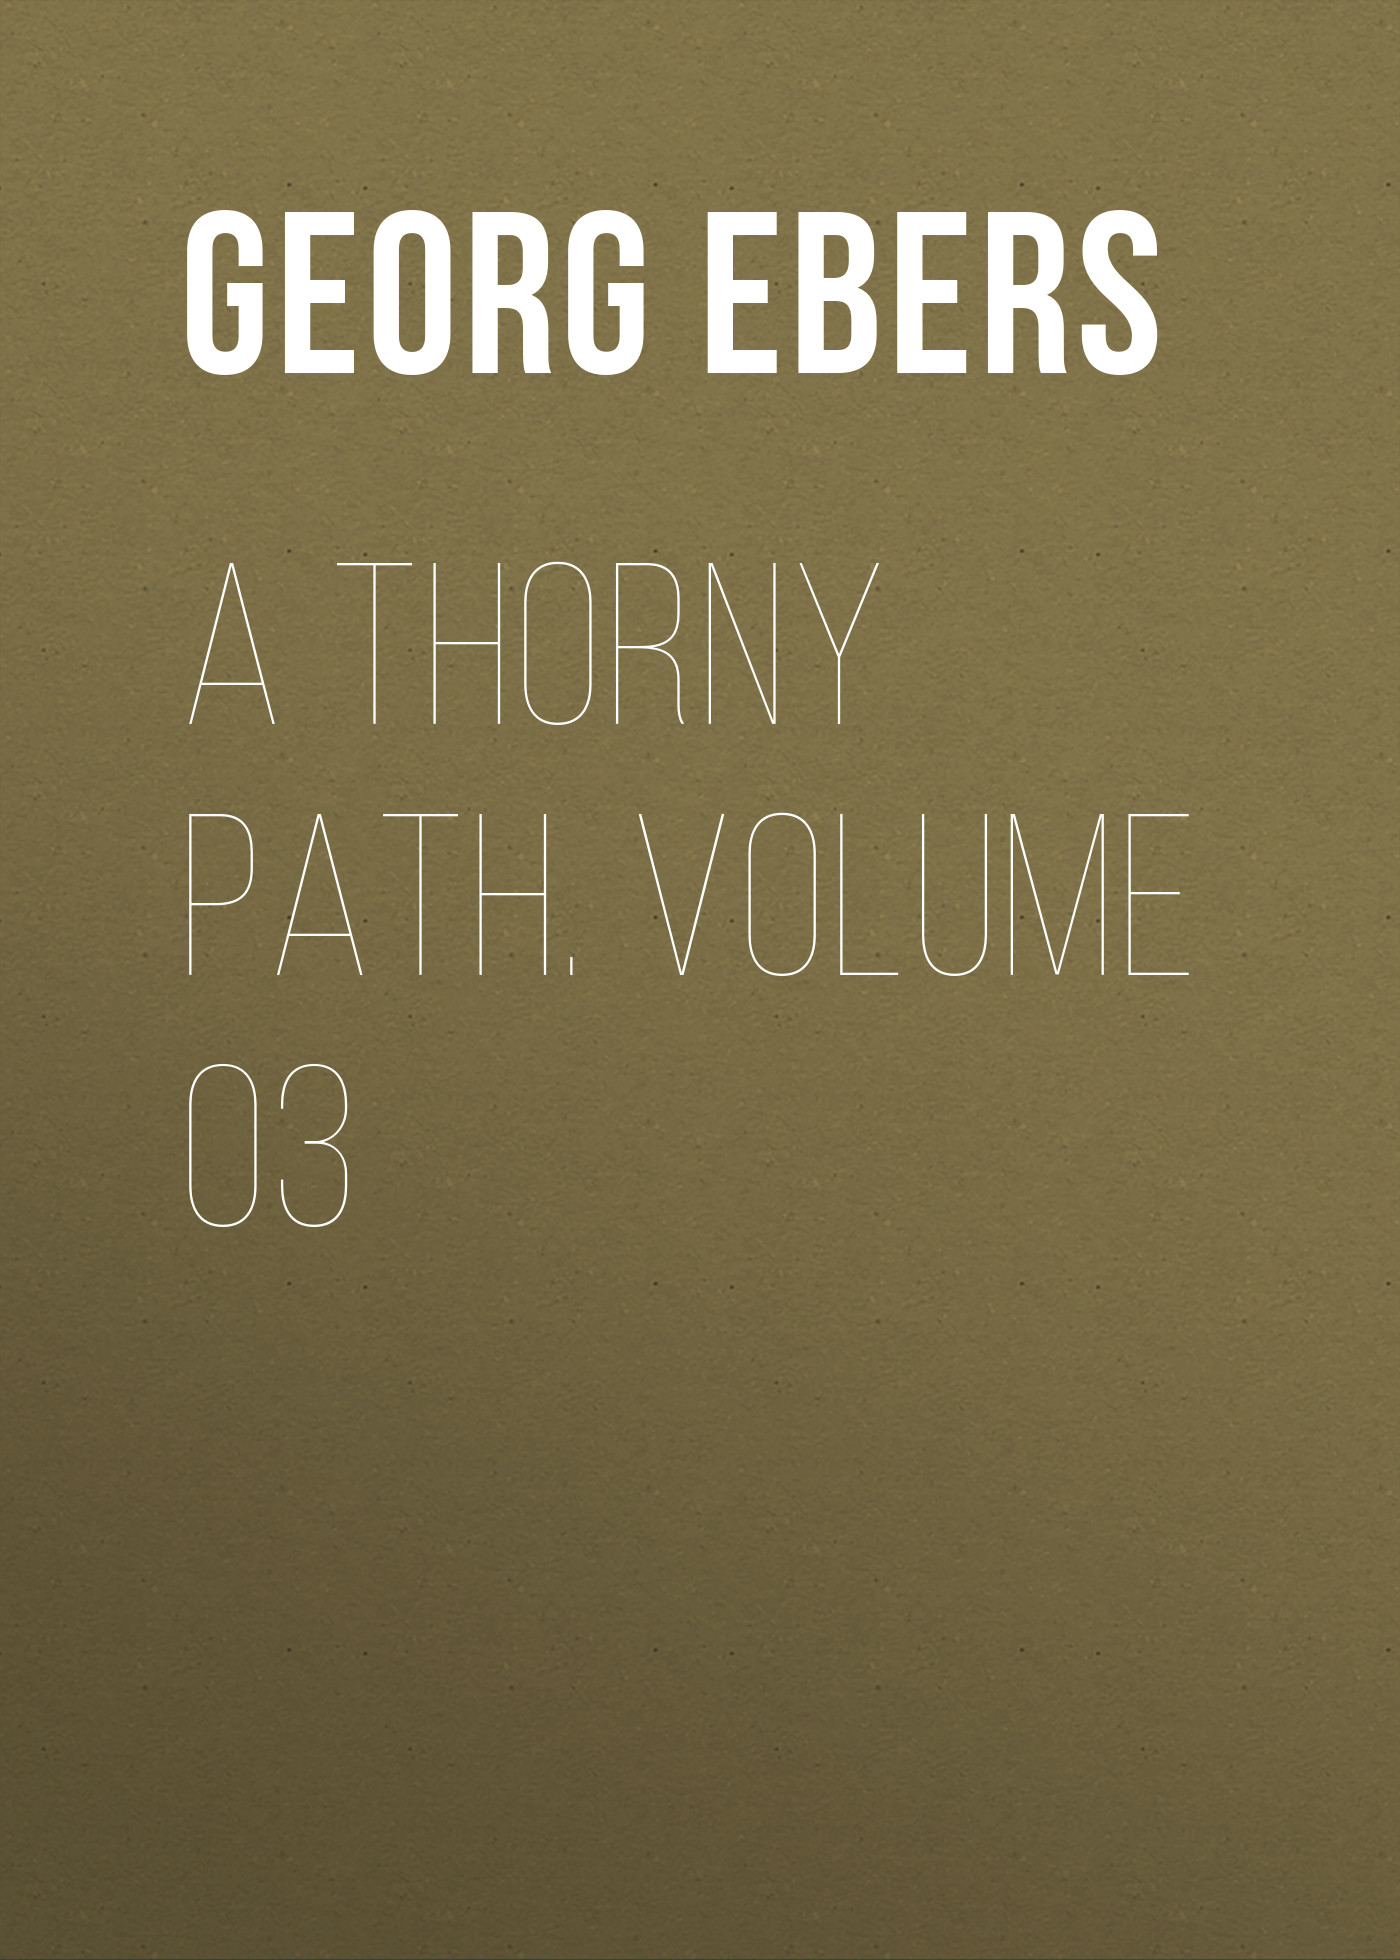 Книга A Thorny Path. Volume 03 из серии , созданная Georg Ebers, может относится к жанру Зарубежная классика, Зарубежная старинная литература. Стоимость электронной книги A Thorny Path. Volume 03 с идентификатором 42628067 составляет 0 руб.